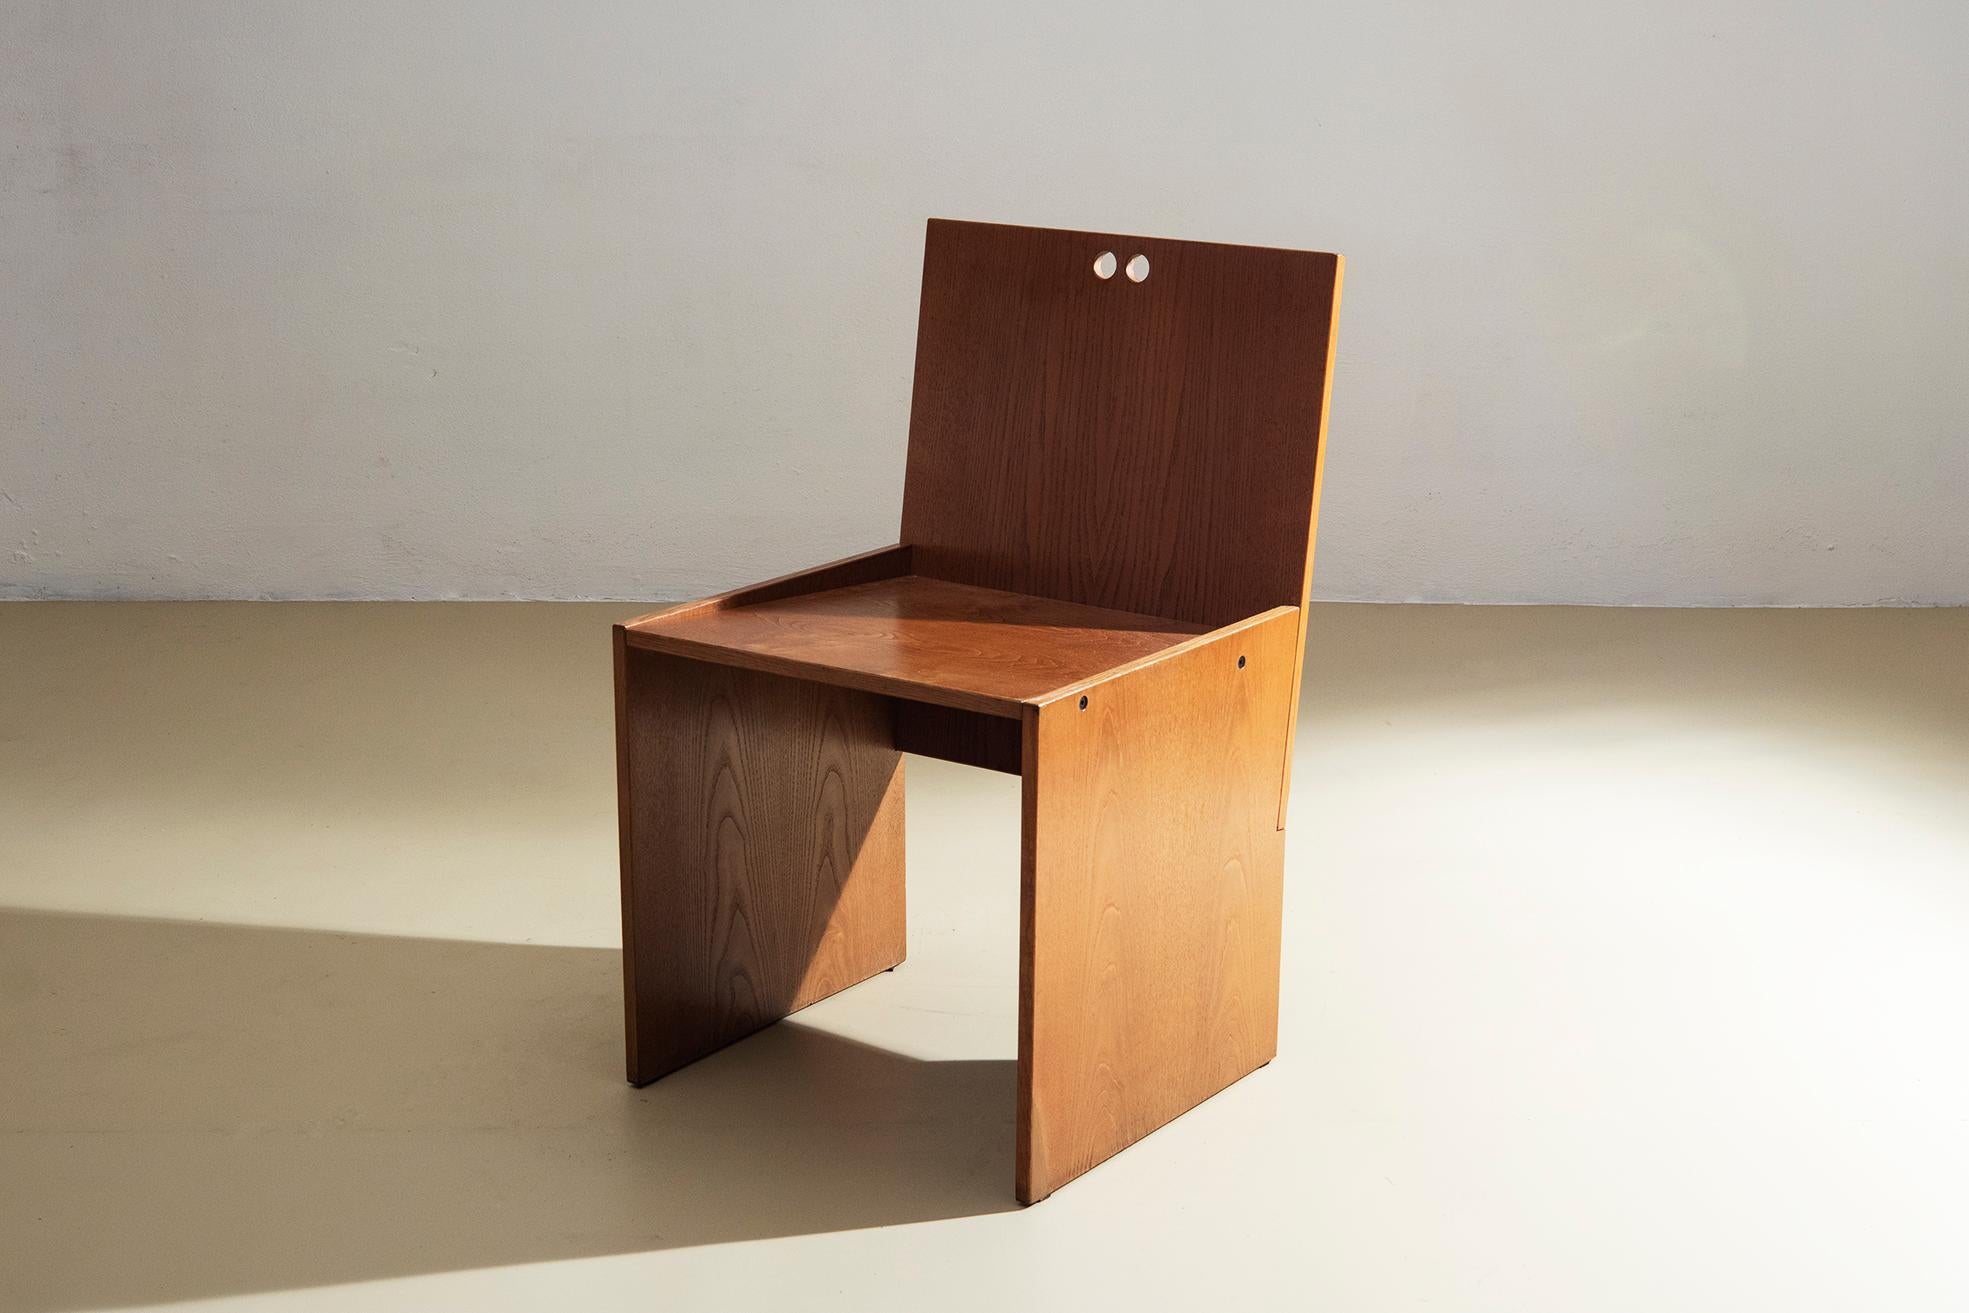 Ensemble de quatre chaises, production italienne
Quatre chaises de fabrication italienne, la structure est constituée de quatre panneaux de bois plaqué chêne qui s'emboîtent perpendiculairement, le dossier est percé de deux trous